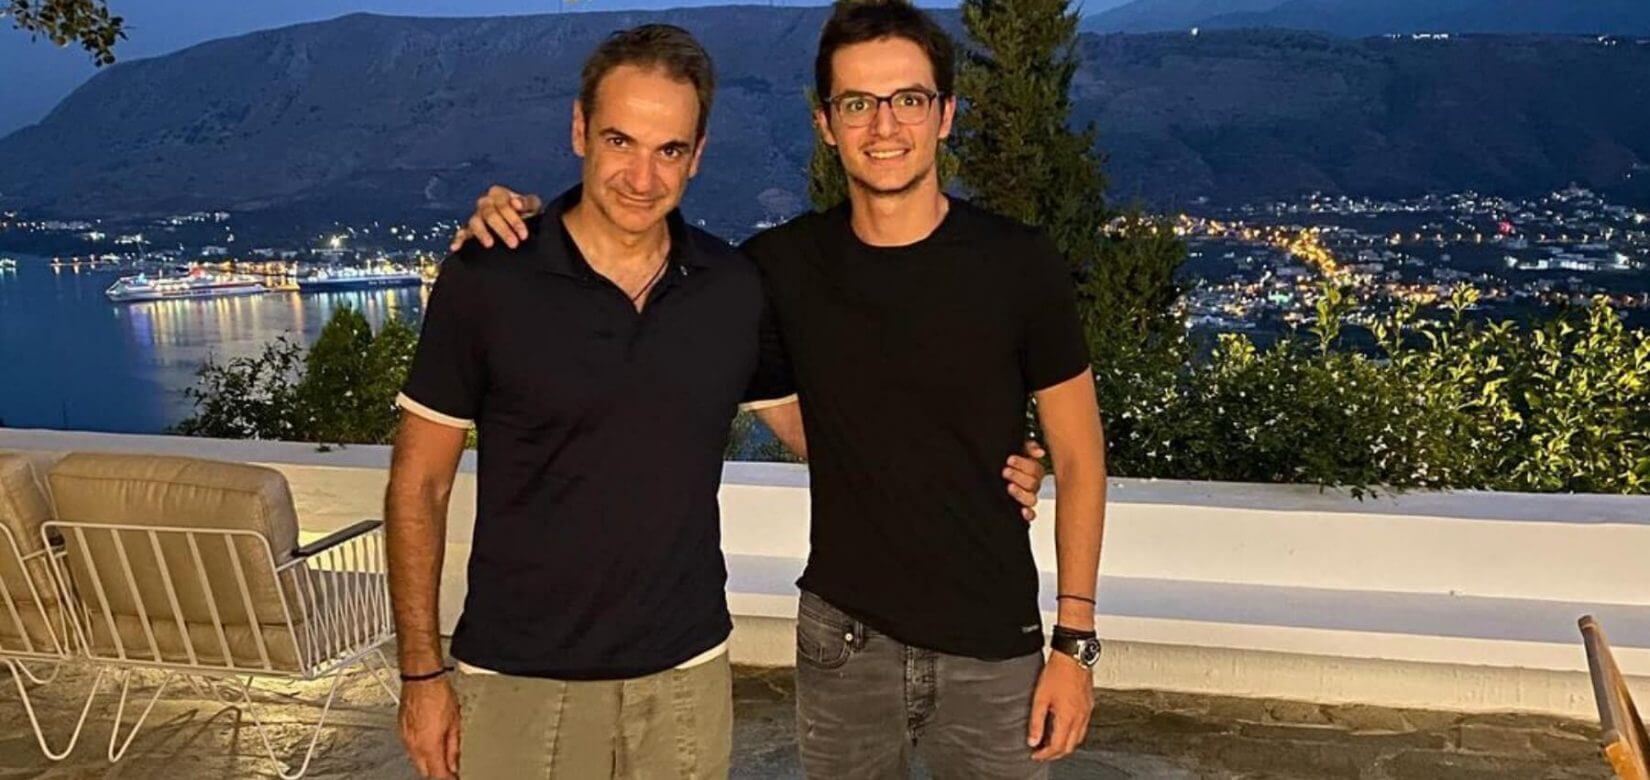 Κ. Μητσοτάκης: Ο πρωθυπουργός ευχήθηκε στον 23χρονο γιο του με μια ιδιαίτερη φωτογραφία